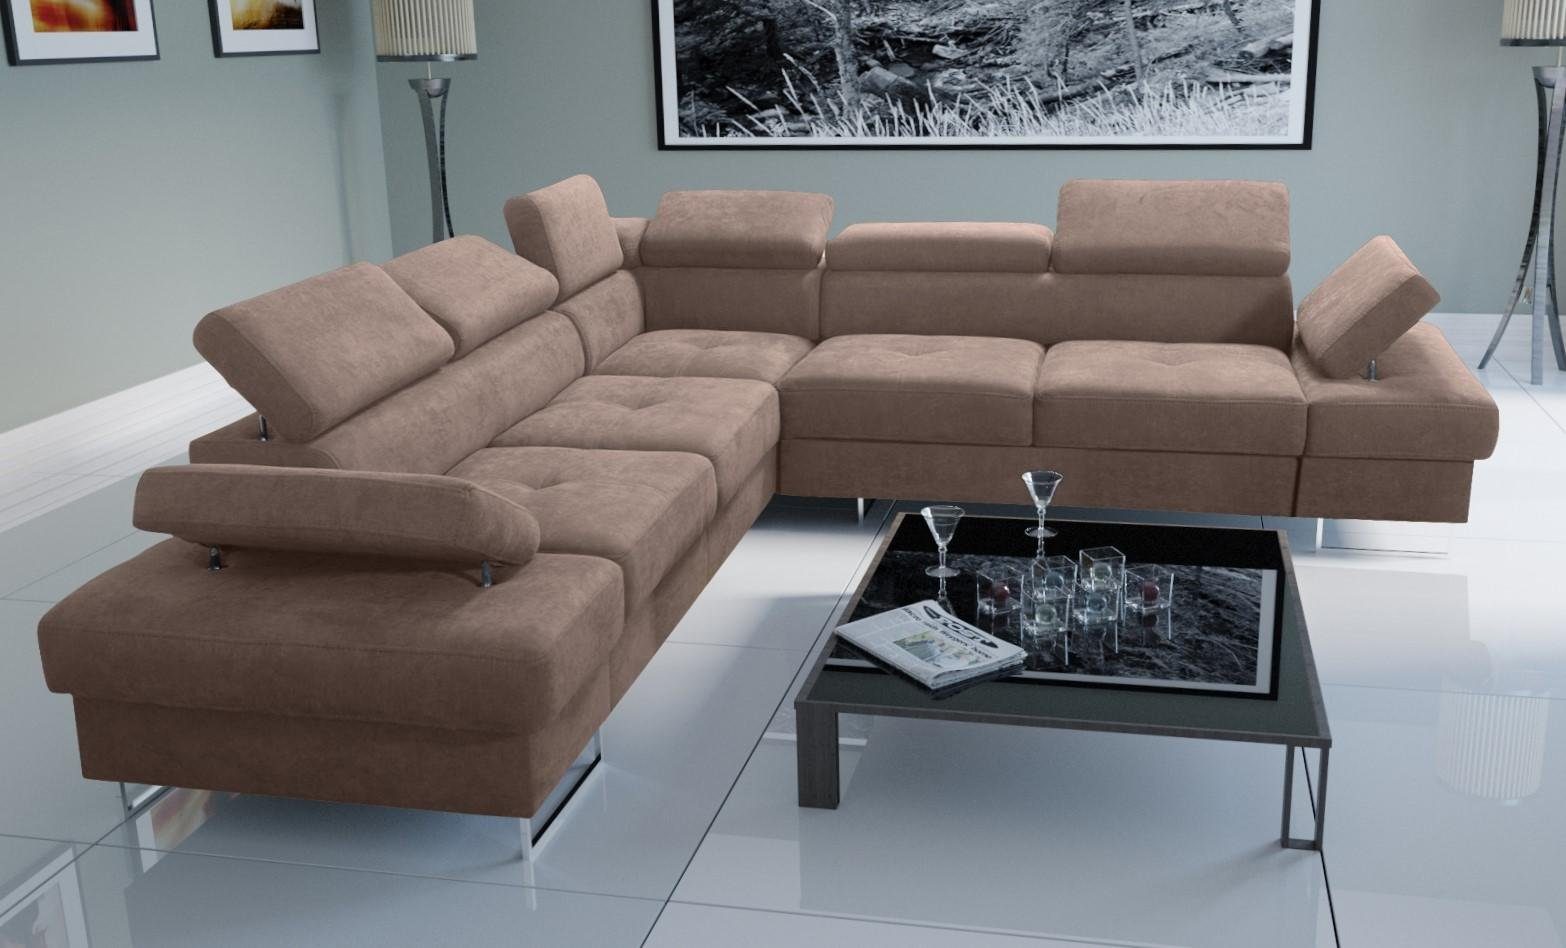 JVmoebel Ecksofa Sofa Wohnzimmer Made Couch in Polsterung Europe L-Form Design, Beige